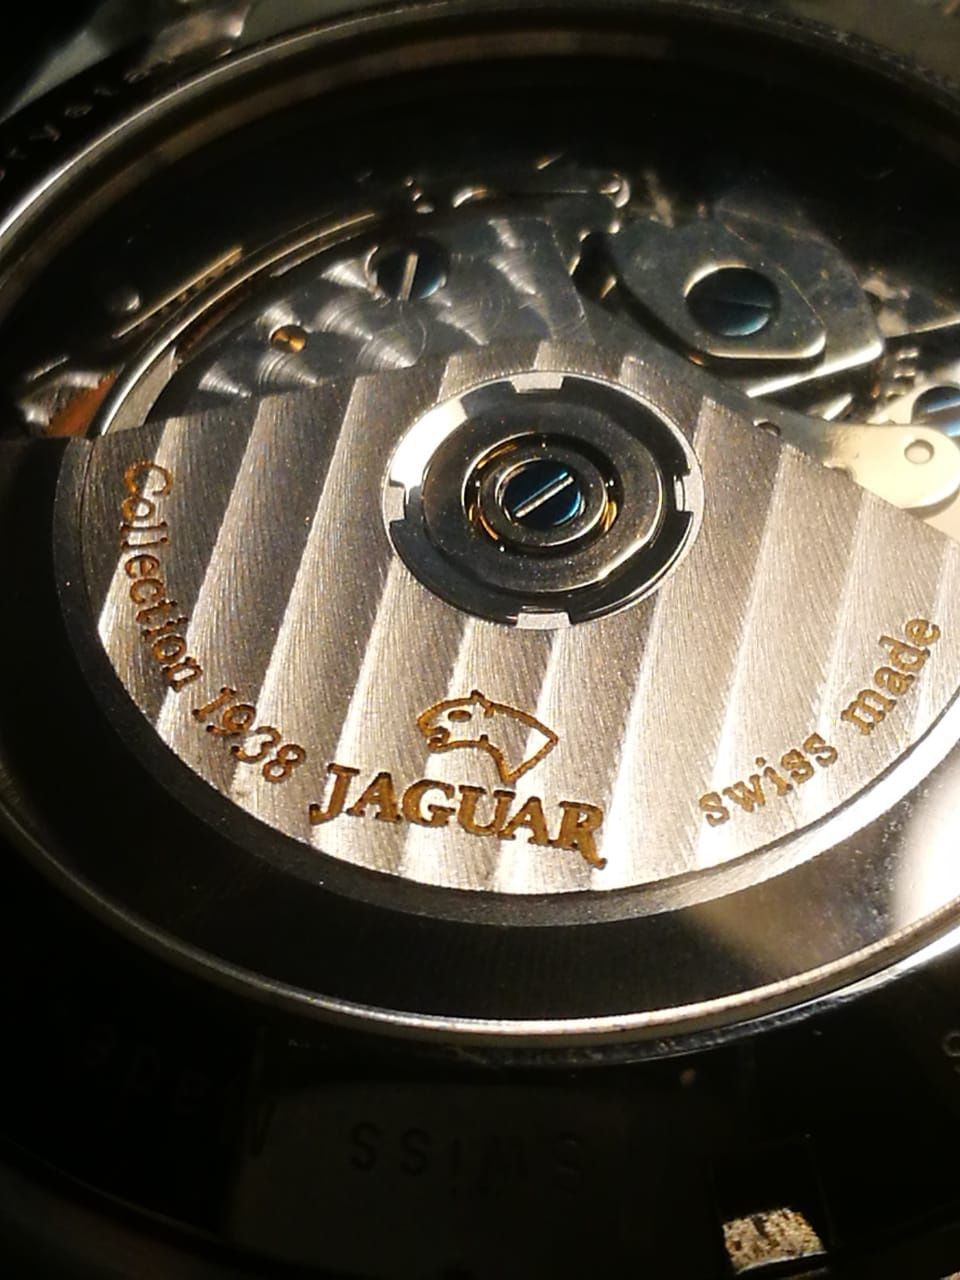 Ceas de mână Jaguar ediție clasică 50 ATM